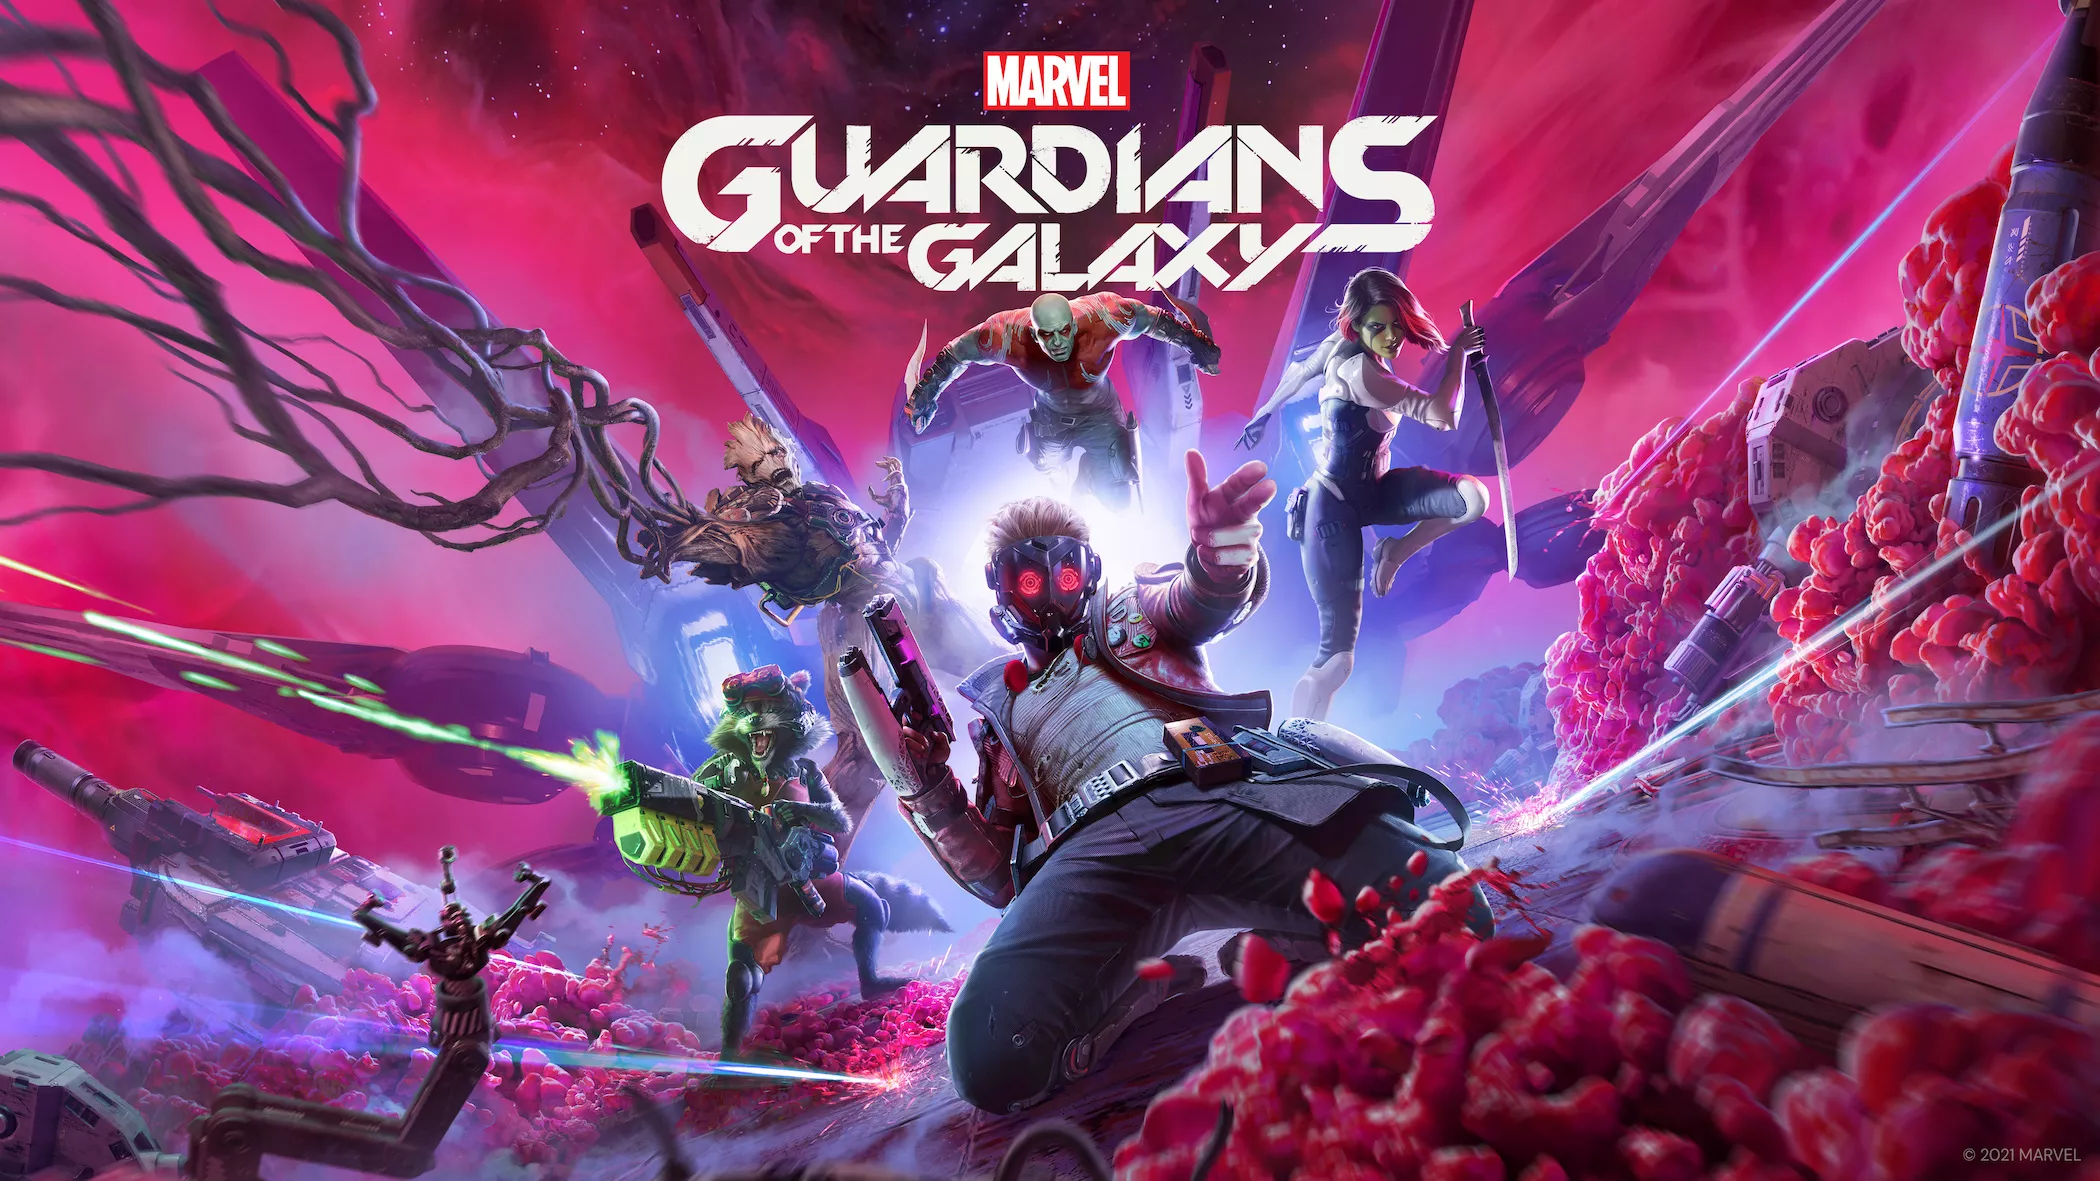 Accolades-Trailer zu Marvel's Guardians of the Galaxy veröffentlicht Heropic